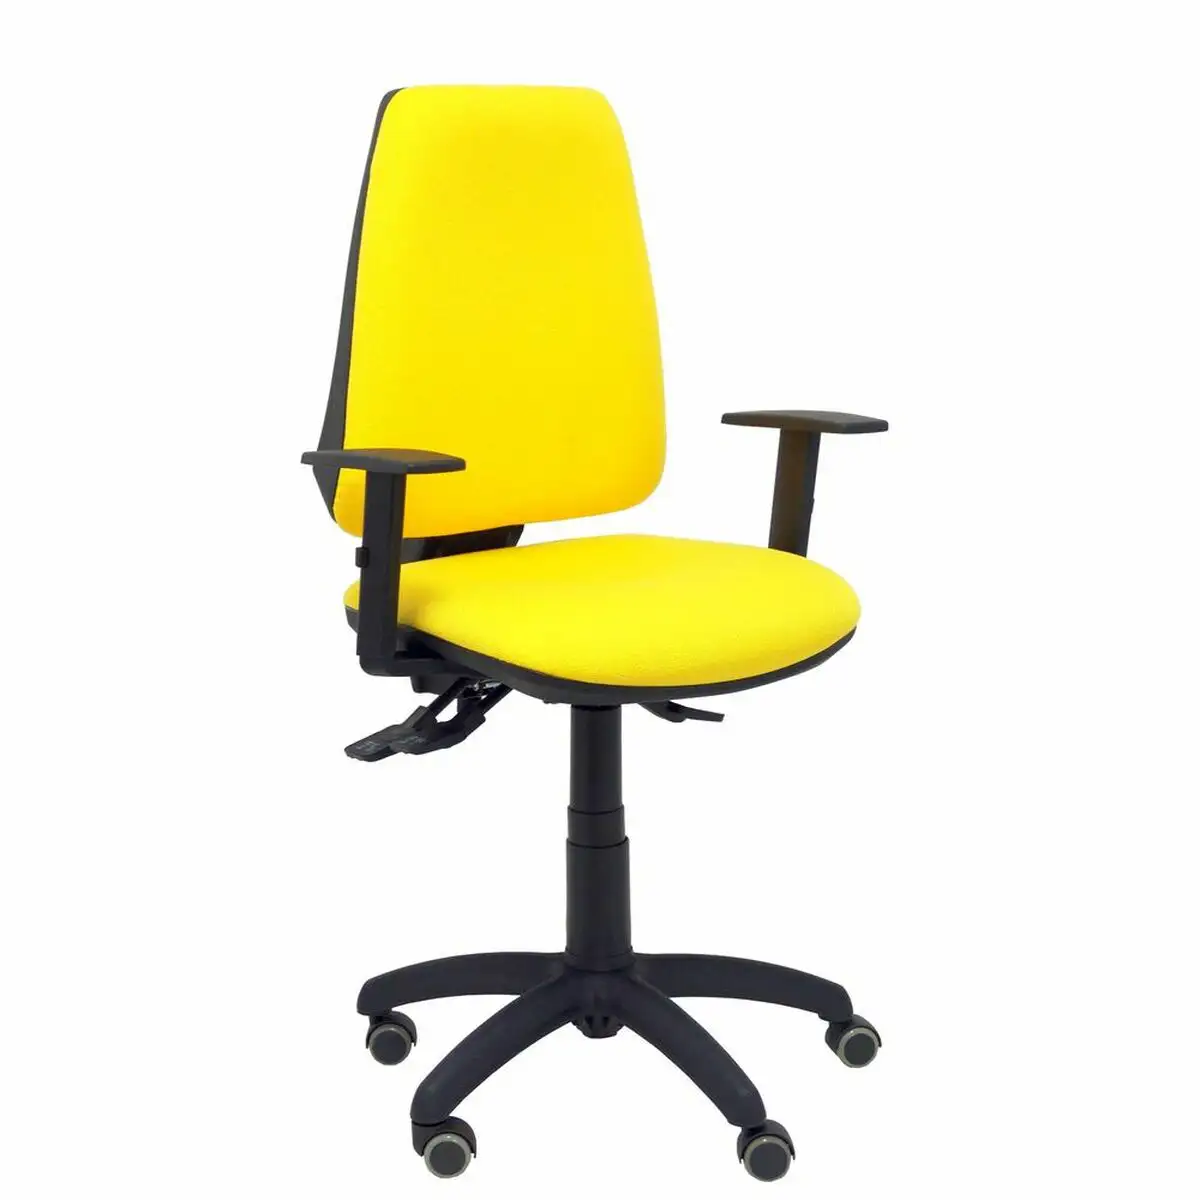 Chaise de bureau elche s bali p c 00b10rp jaune_3166. DIAYTAR SENEGAL - L'Art de Choisir, l'Art de S'émerveiller. Explorez notre gamme de produits et laissez-vous émerveiller par des créations authentiques et des designs modernes.